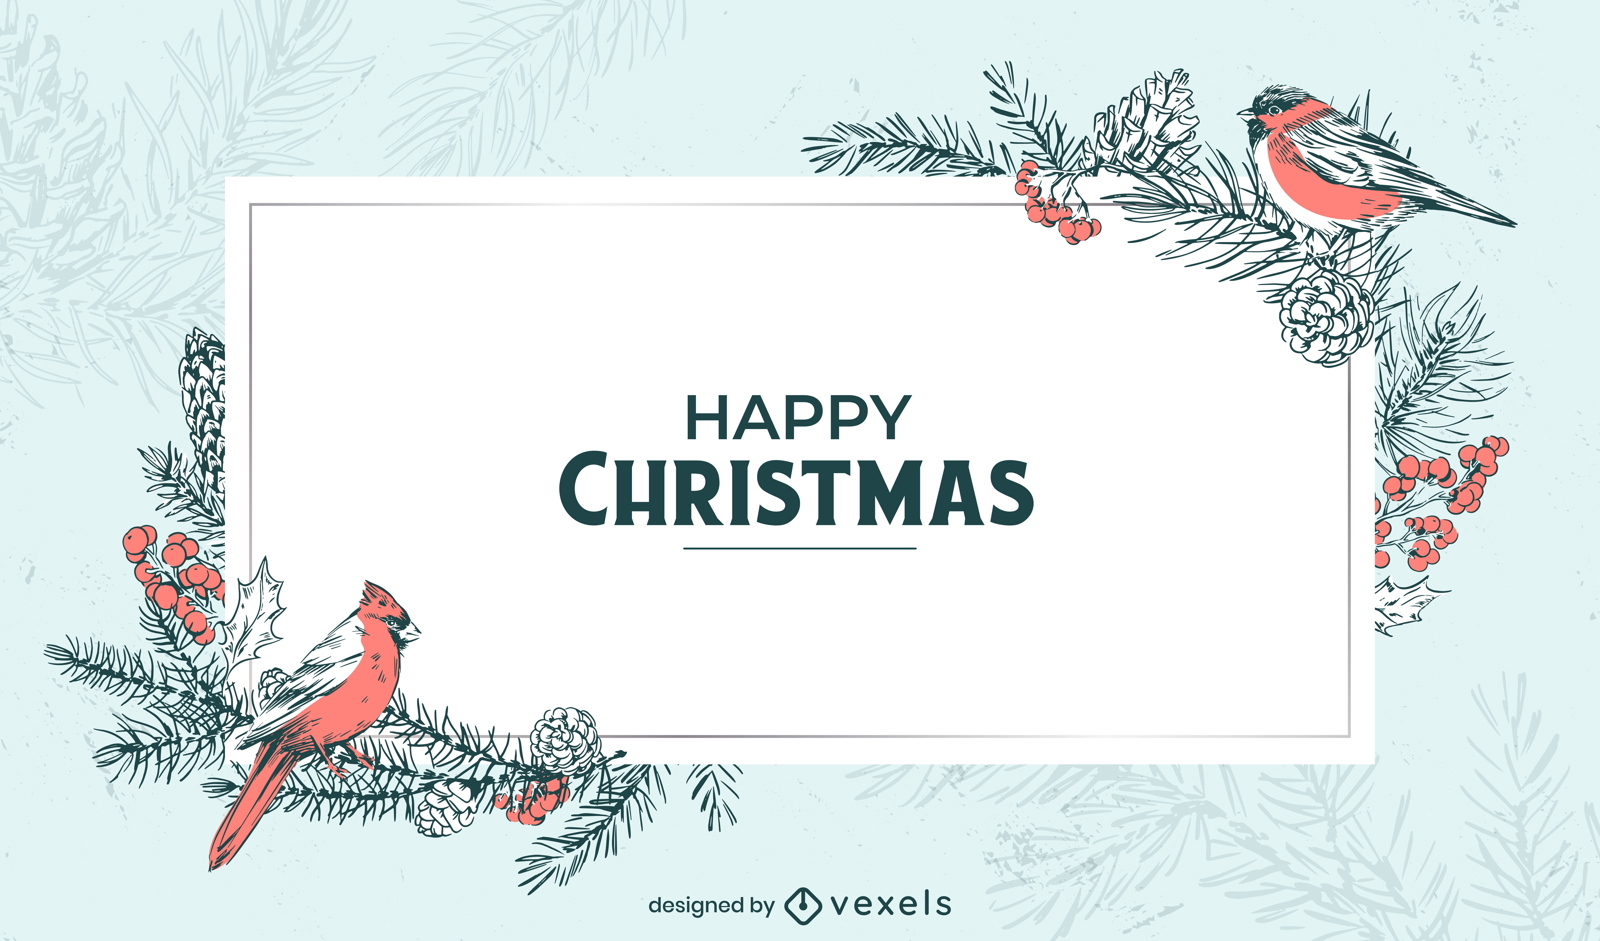 Winter-Hintergrunddesign der frohen Weihnachten